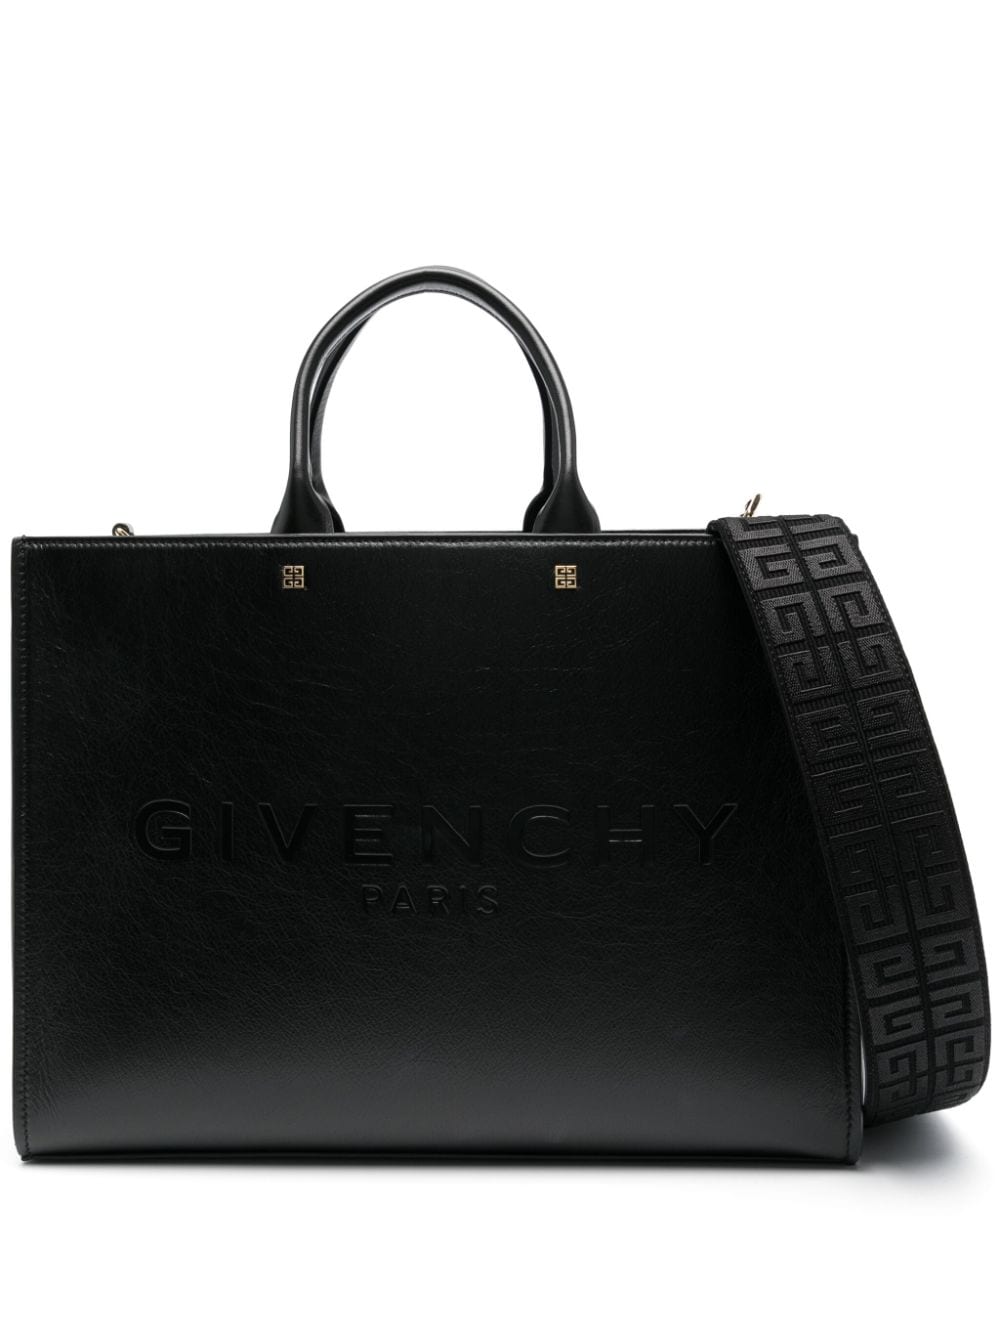 Givenchy GIVENCHY- G-tote Medium Tote Bag